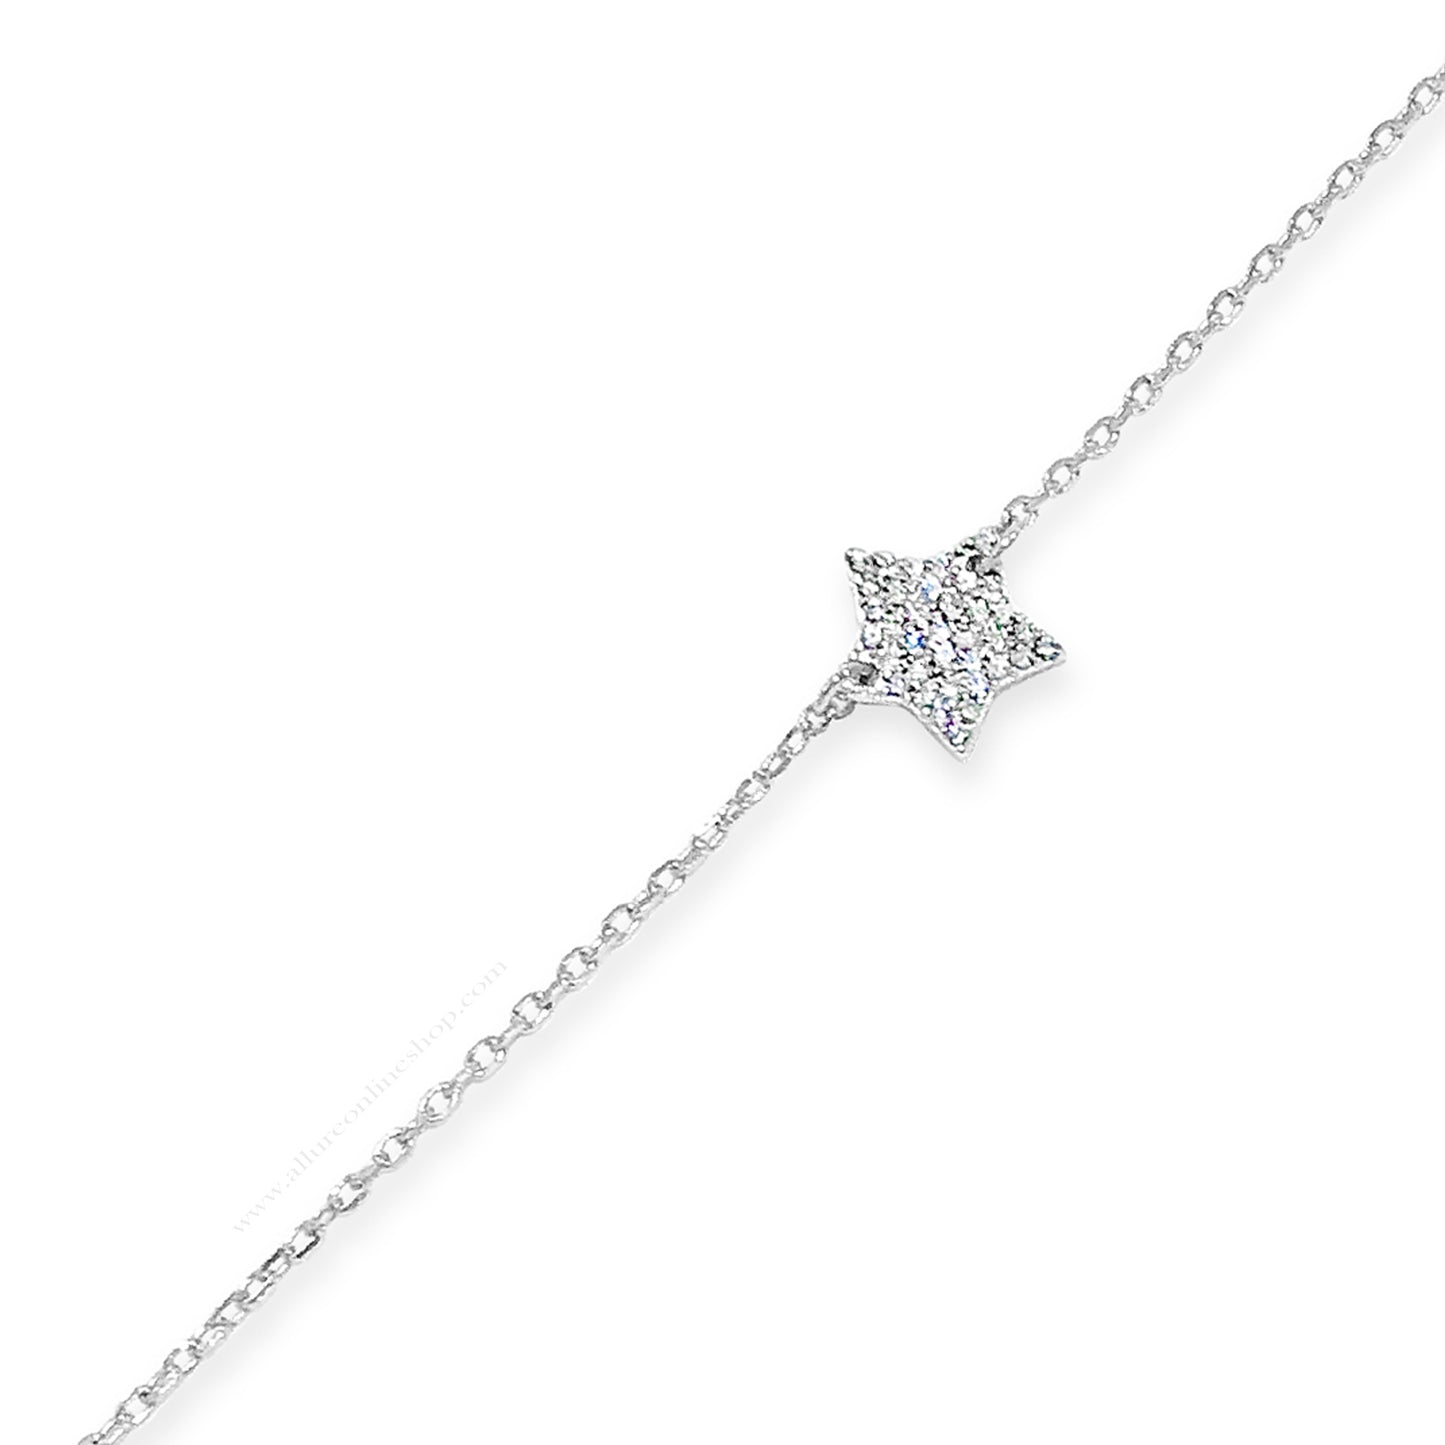 Silver Pave Star Bracelet HCB301